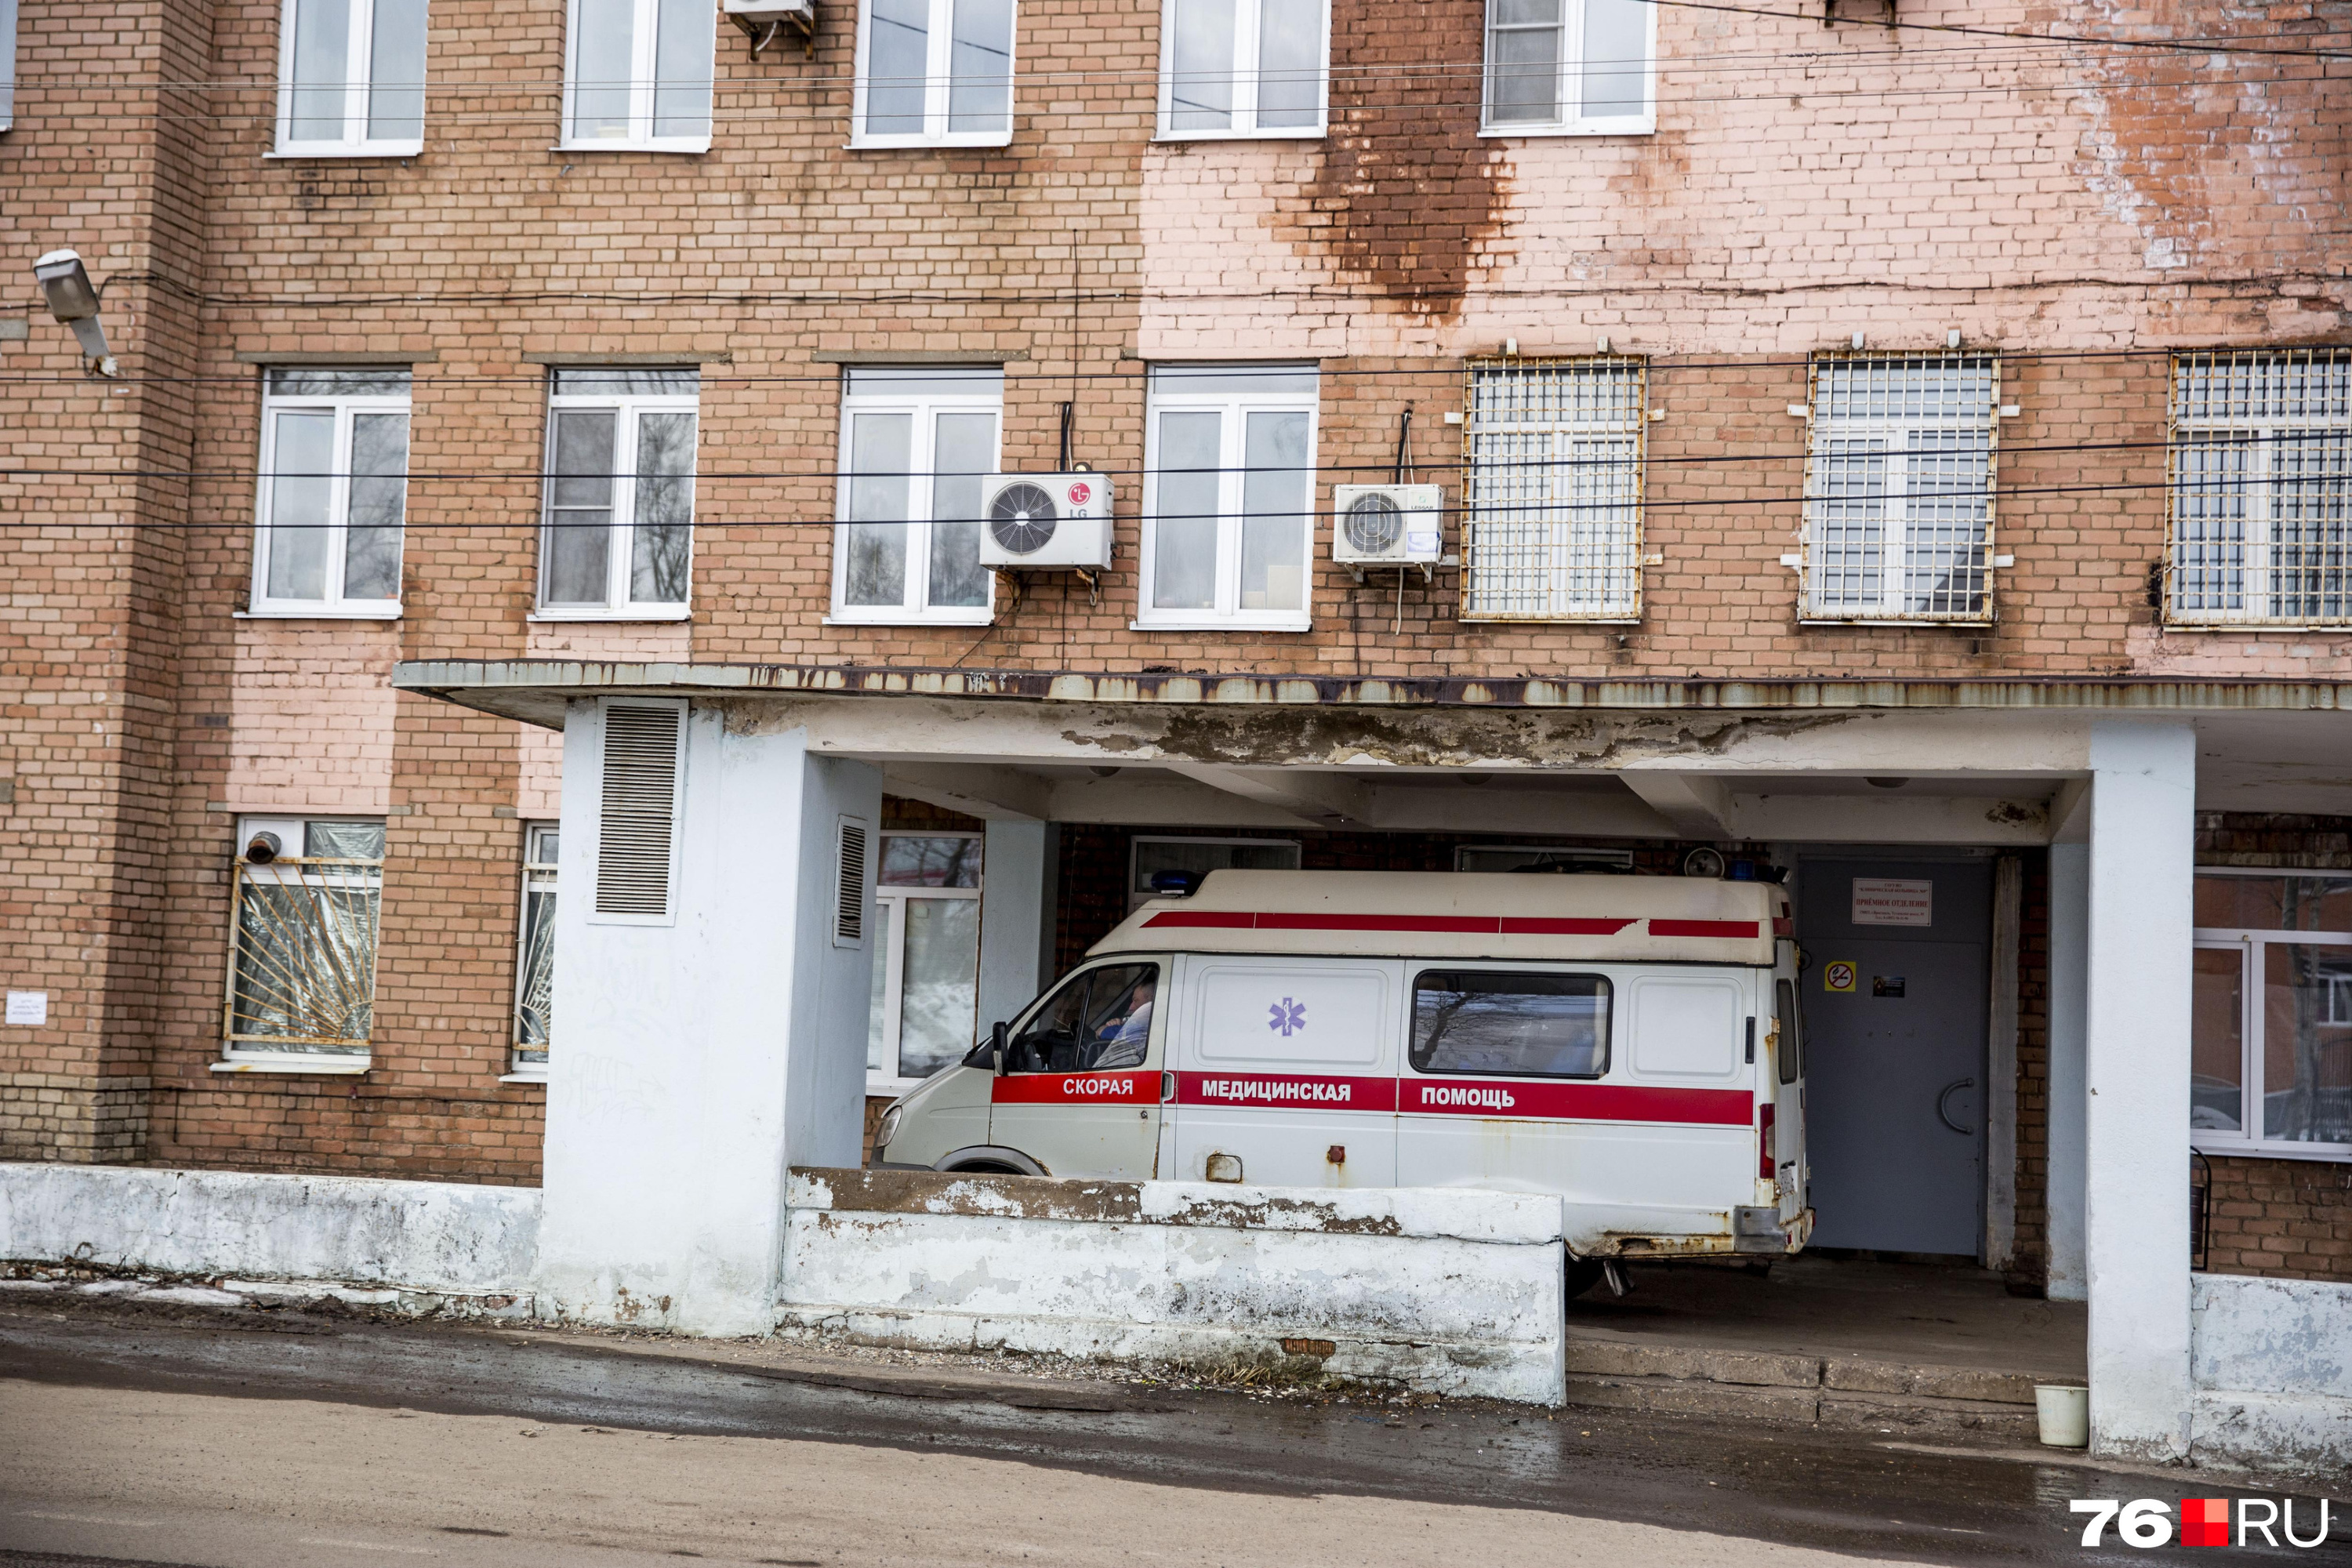 Дальнобойщики из Екатеринбурга попали в больницу в другой части страны. В их машине взорвался баллон